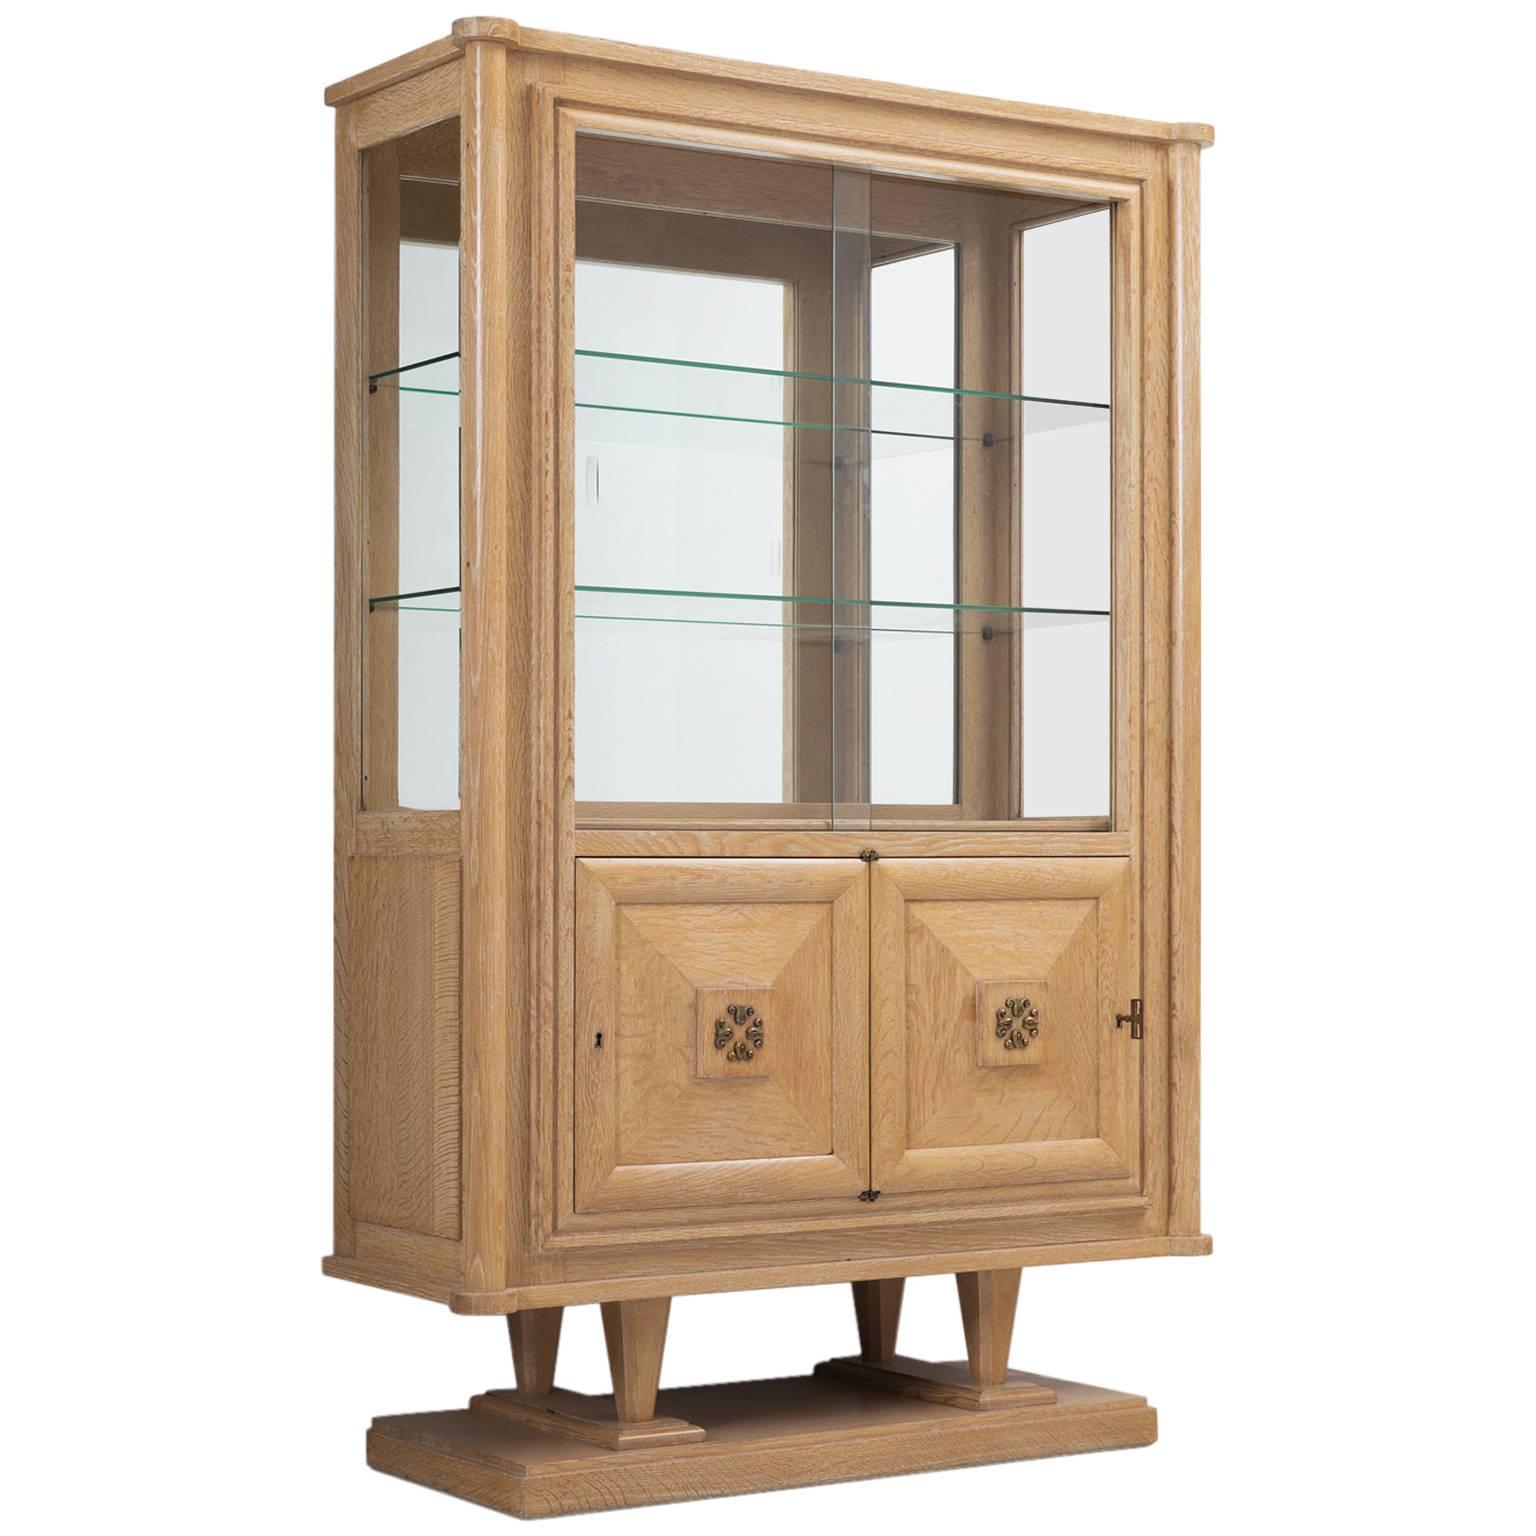 Art Deco Vitrine Cabinet in Blond Oak